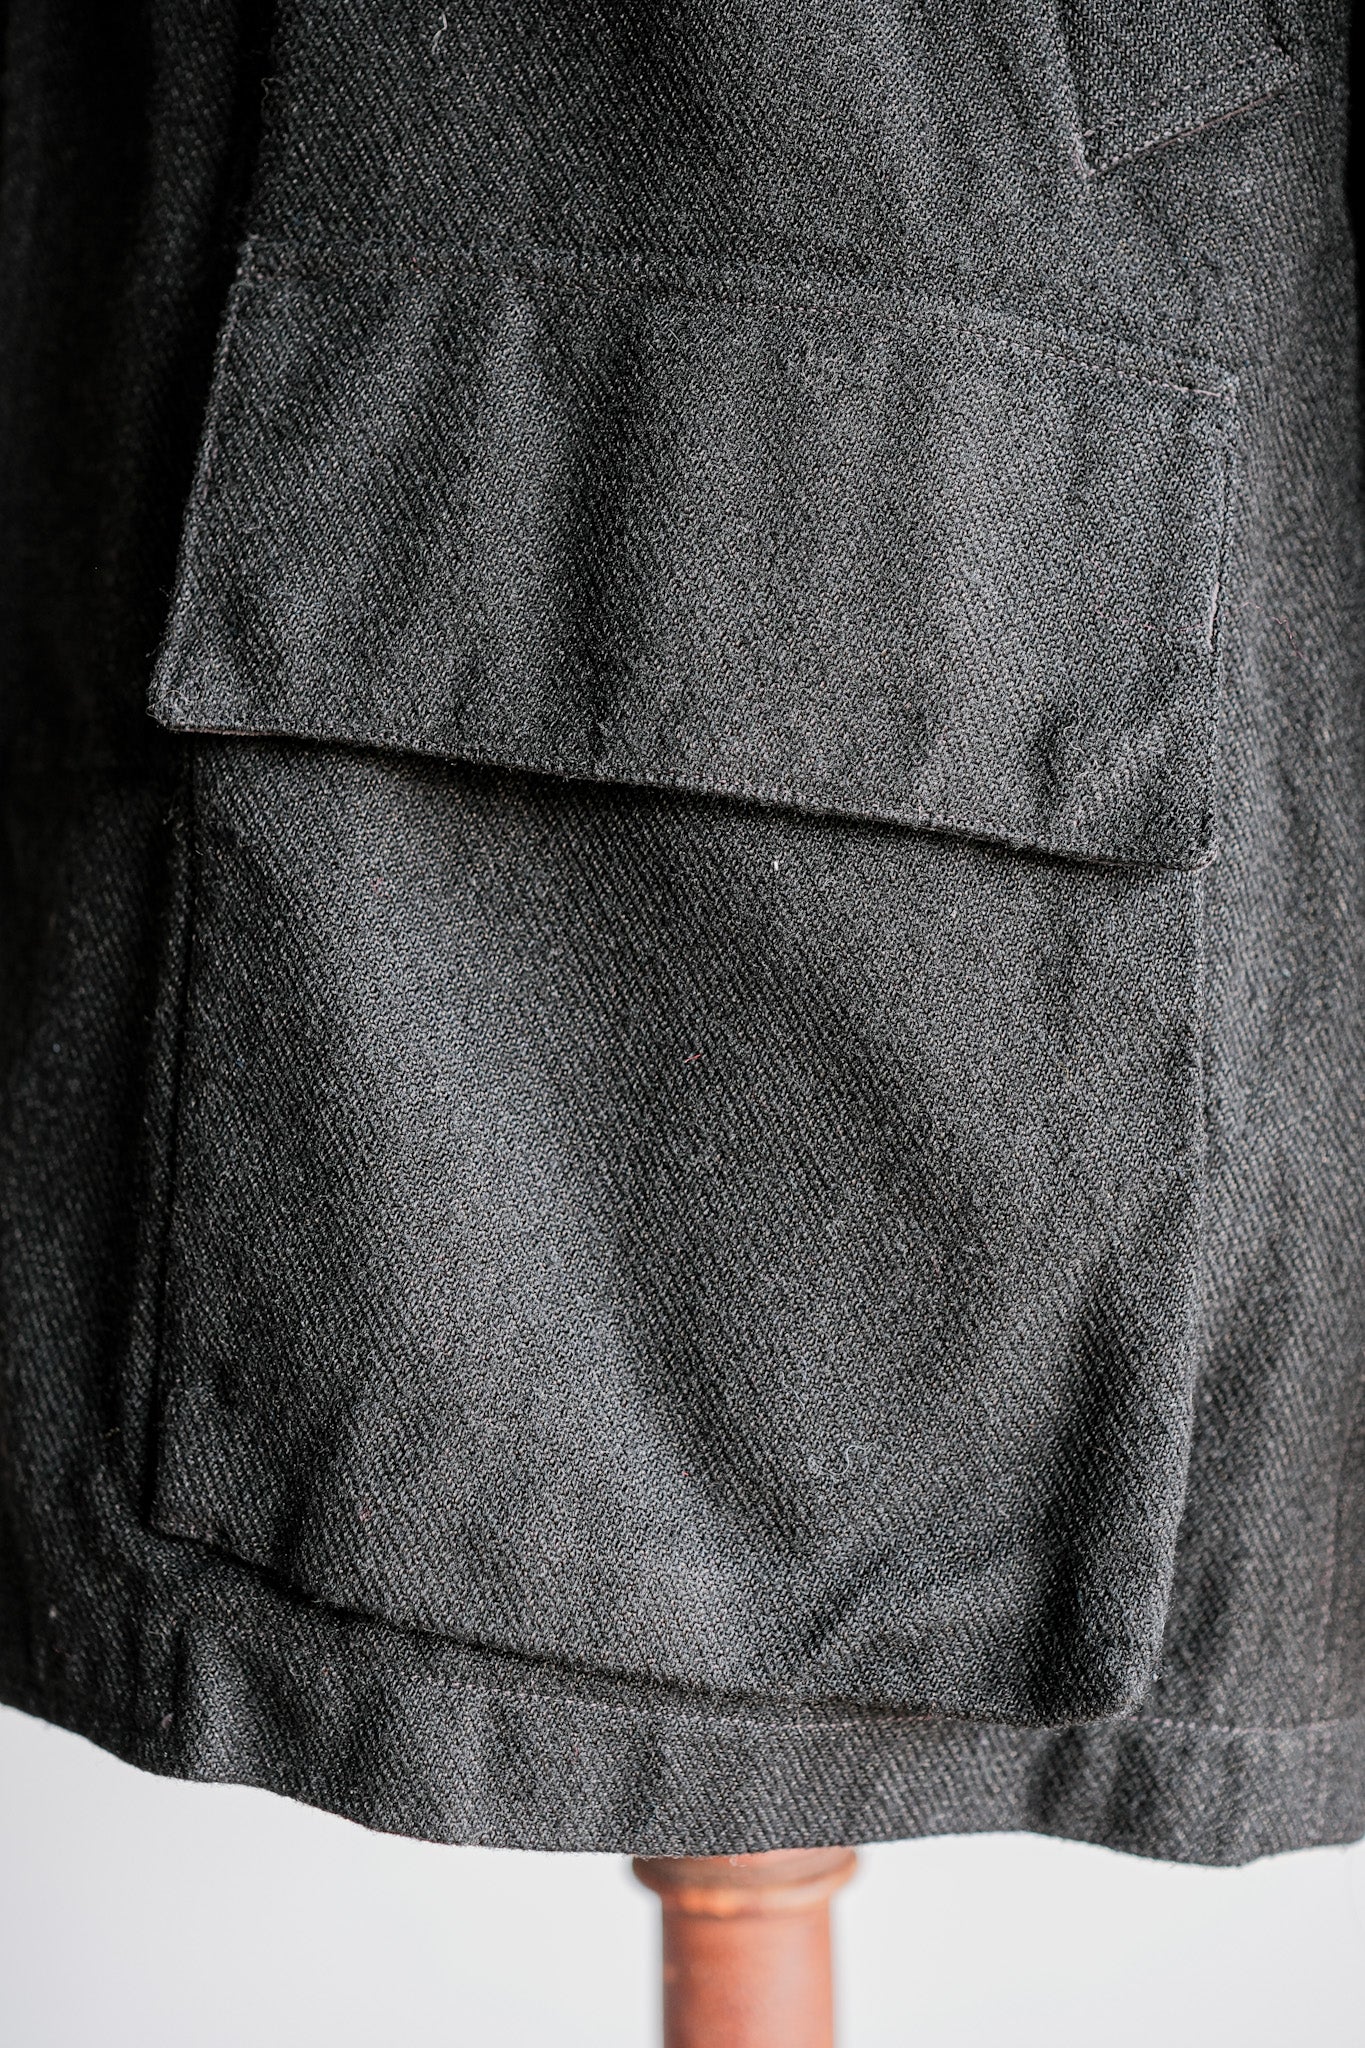 98AW】Old STONE ISLAND Nylon Jacket Size.L 